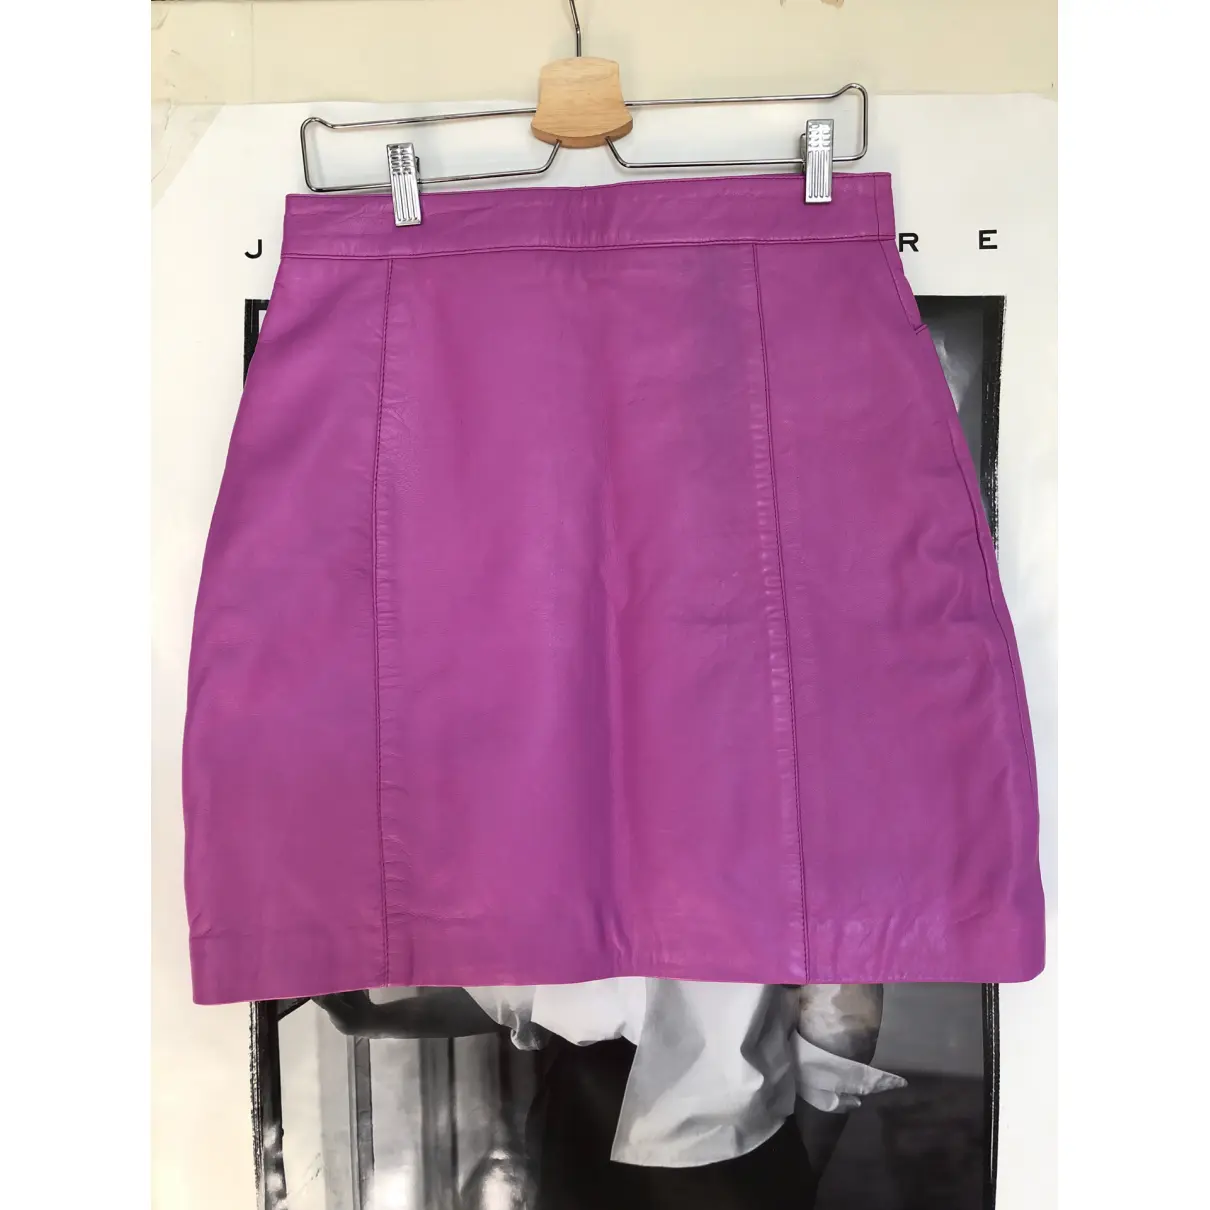 Buy Hosbjerg Leather mini skirt online